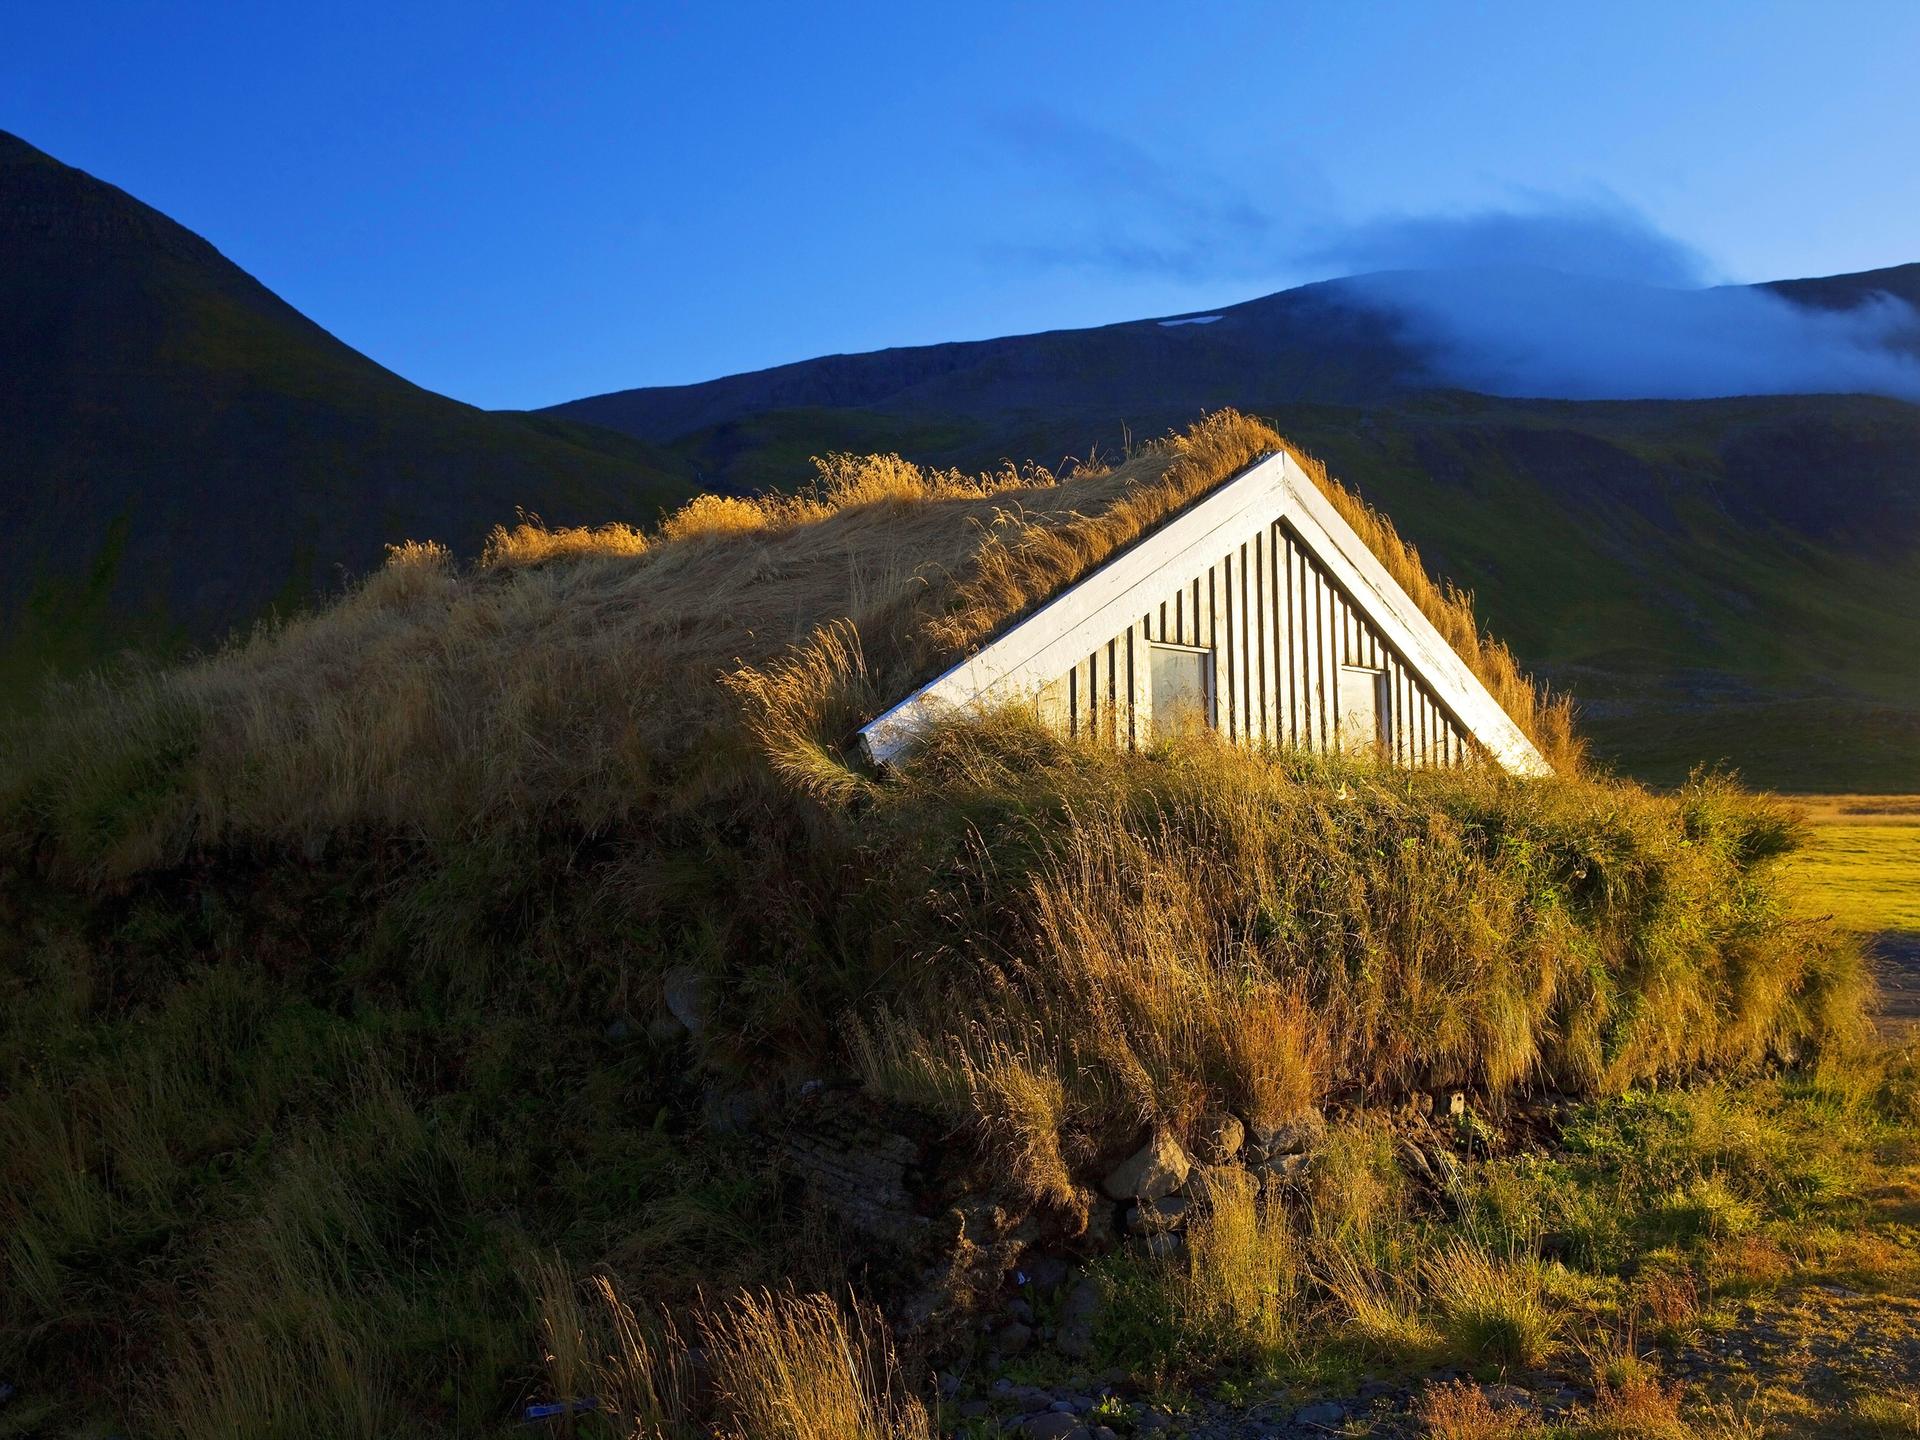 Ein Holzhaus mit Grassodendach in Island im Abendlicht.